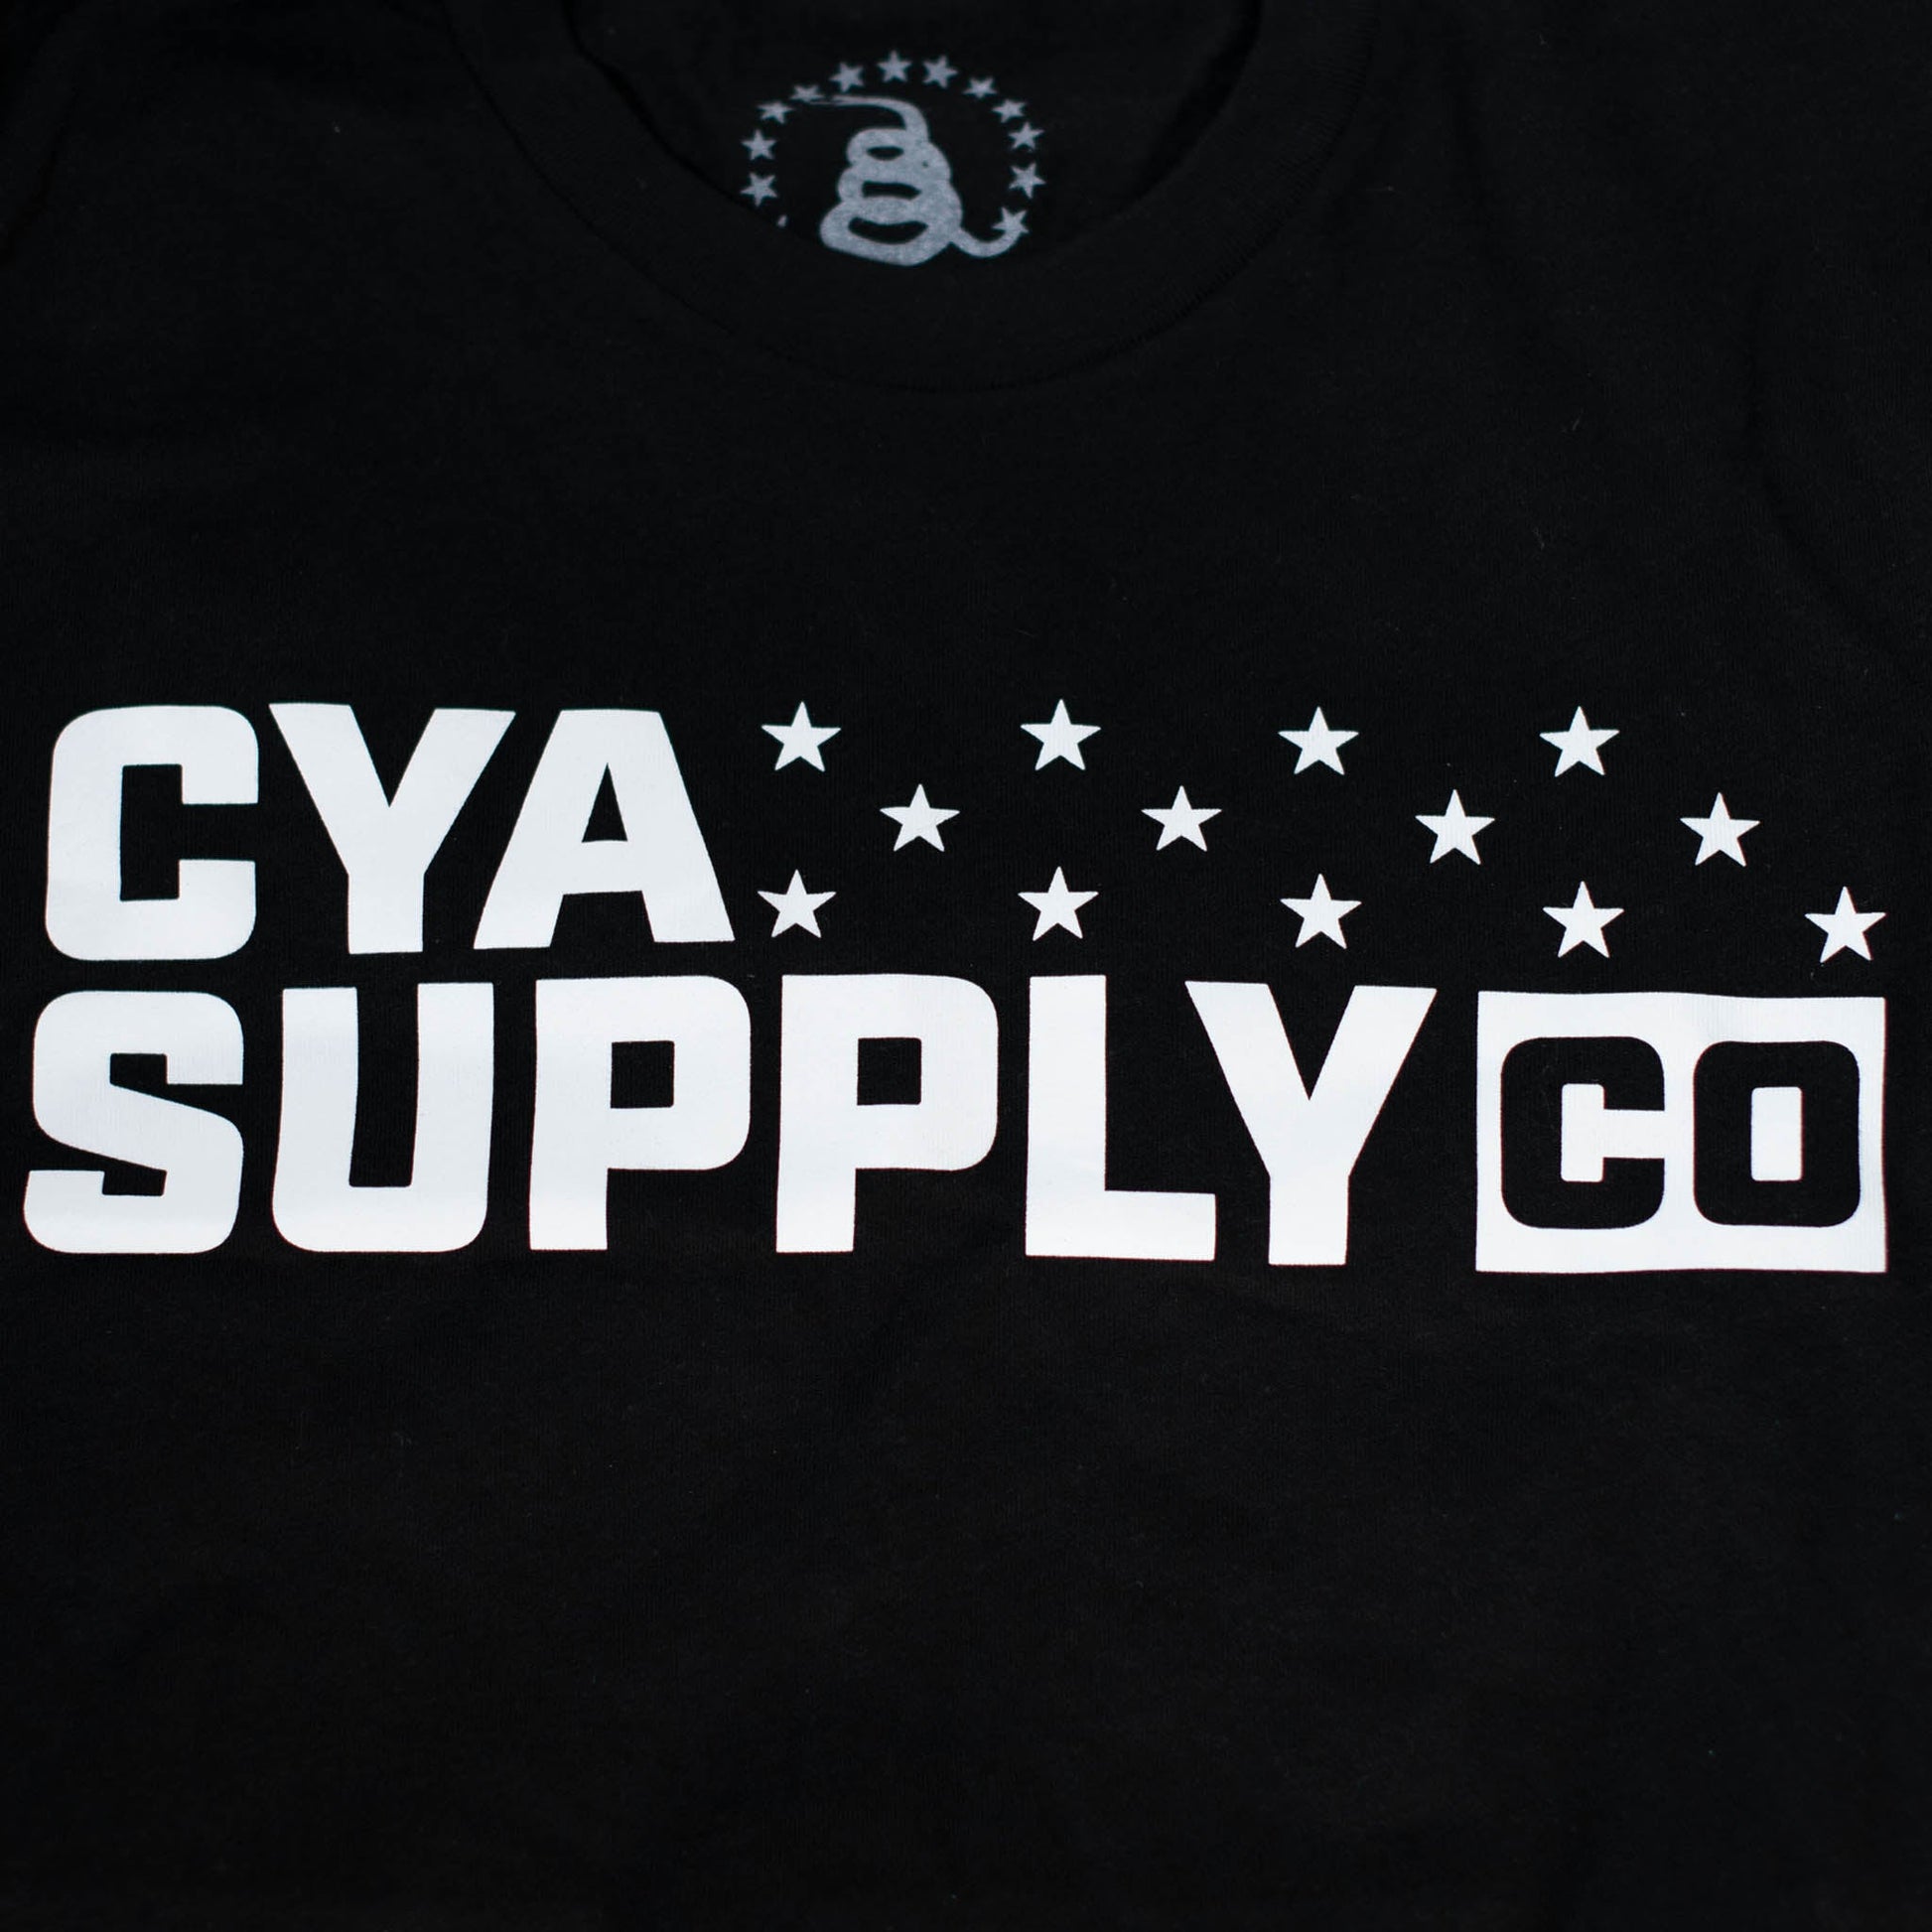 CYA SUPPLY 13 STARS LOGO T-SHIRT CYA Supply Co.